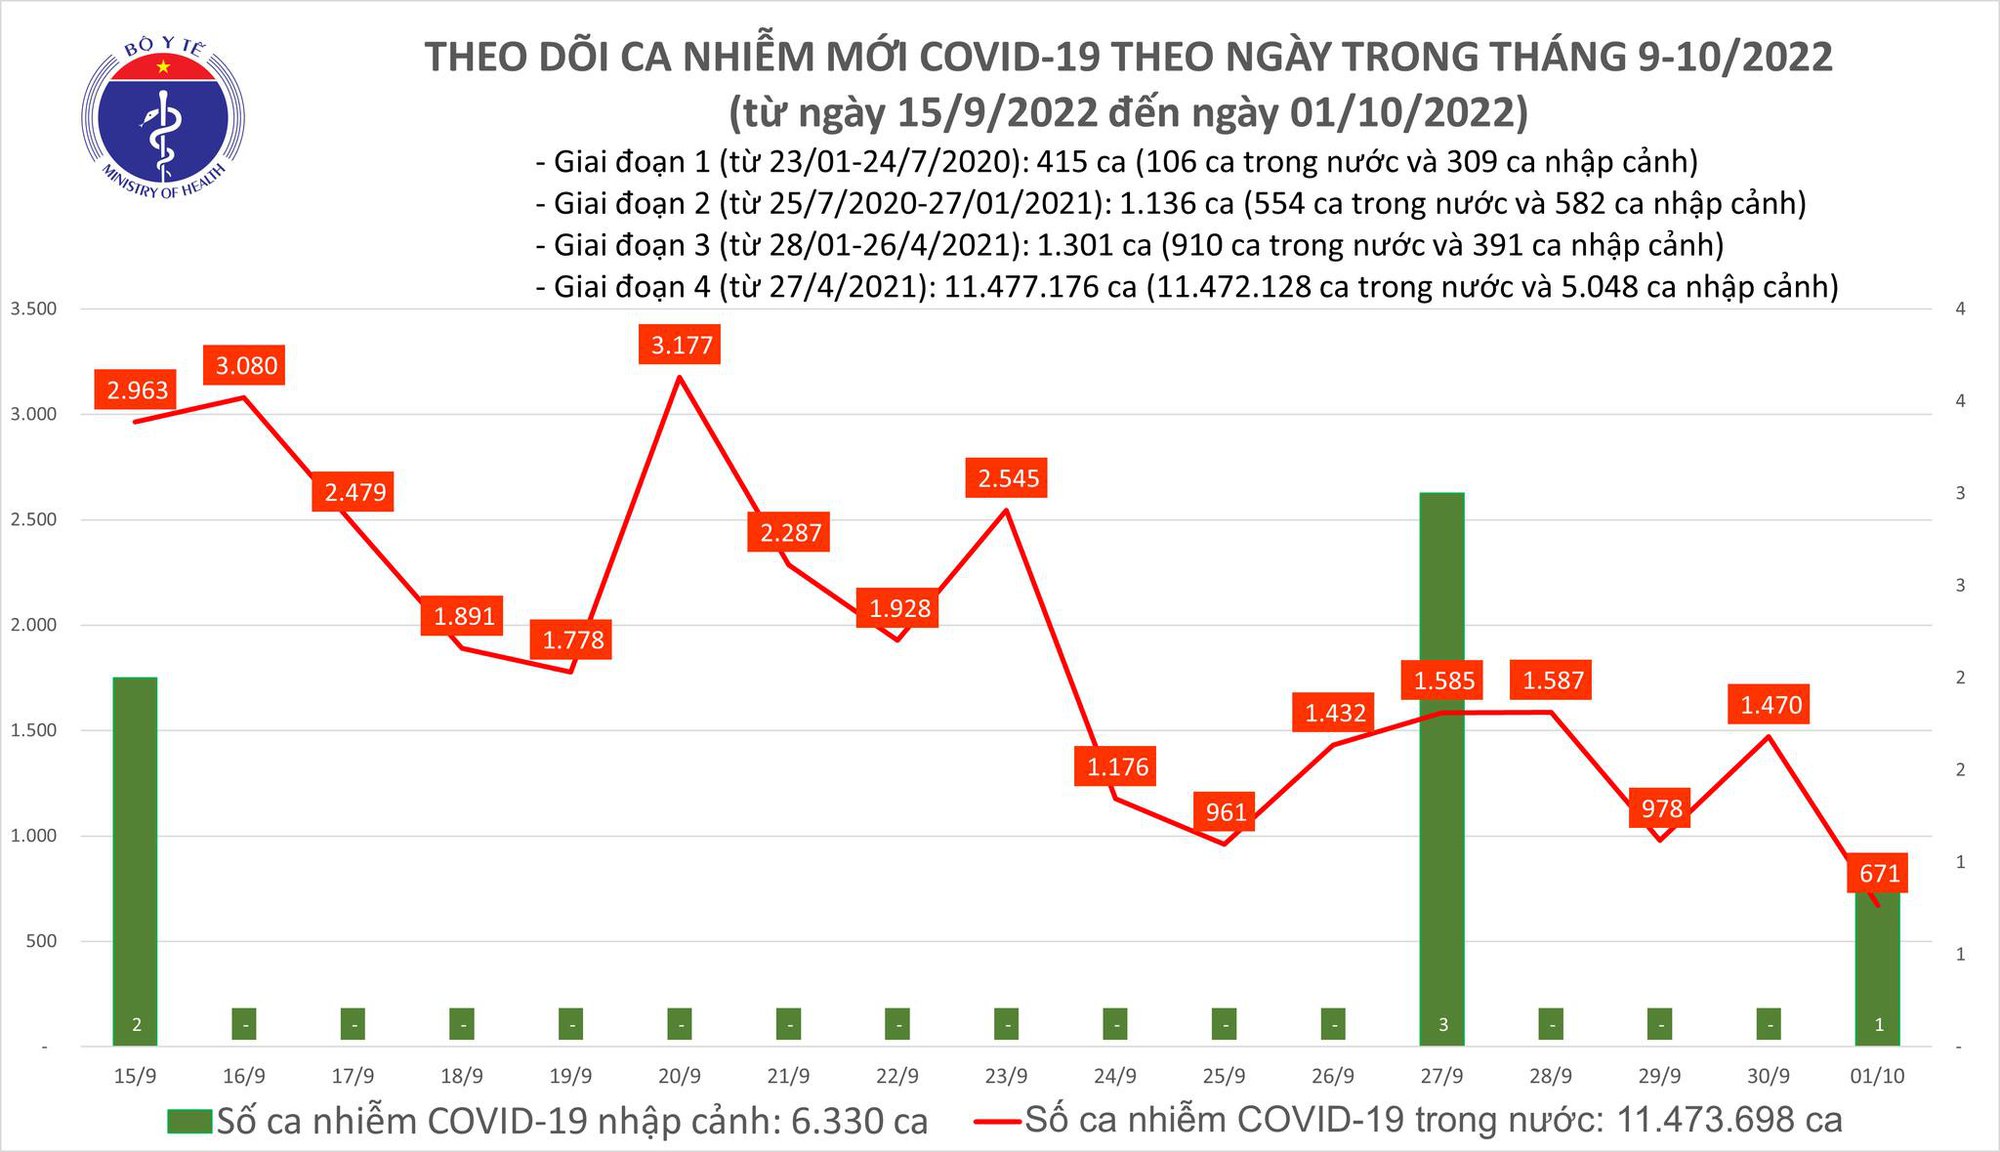 Ngày 1/10: Có 671 ca COVID-19, thấp nhất gần 3 tháng qua; 1 bệnh nhân tử vong - Ảnh 2.